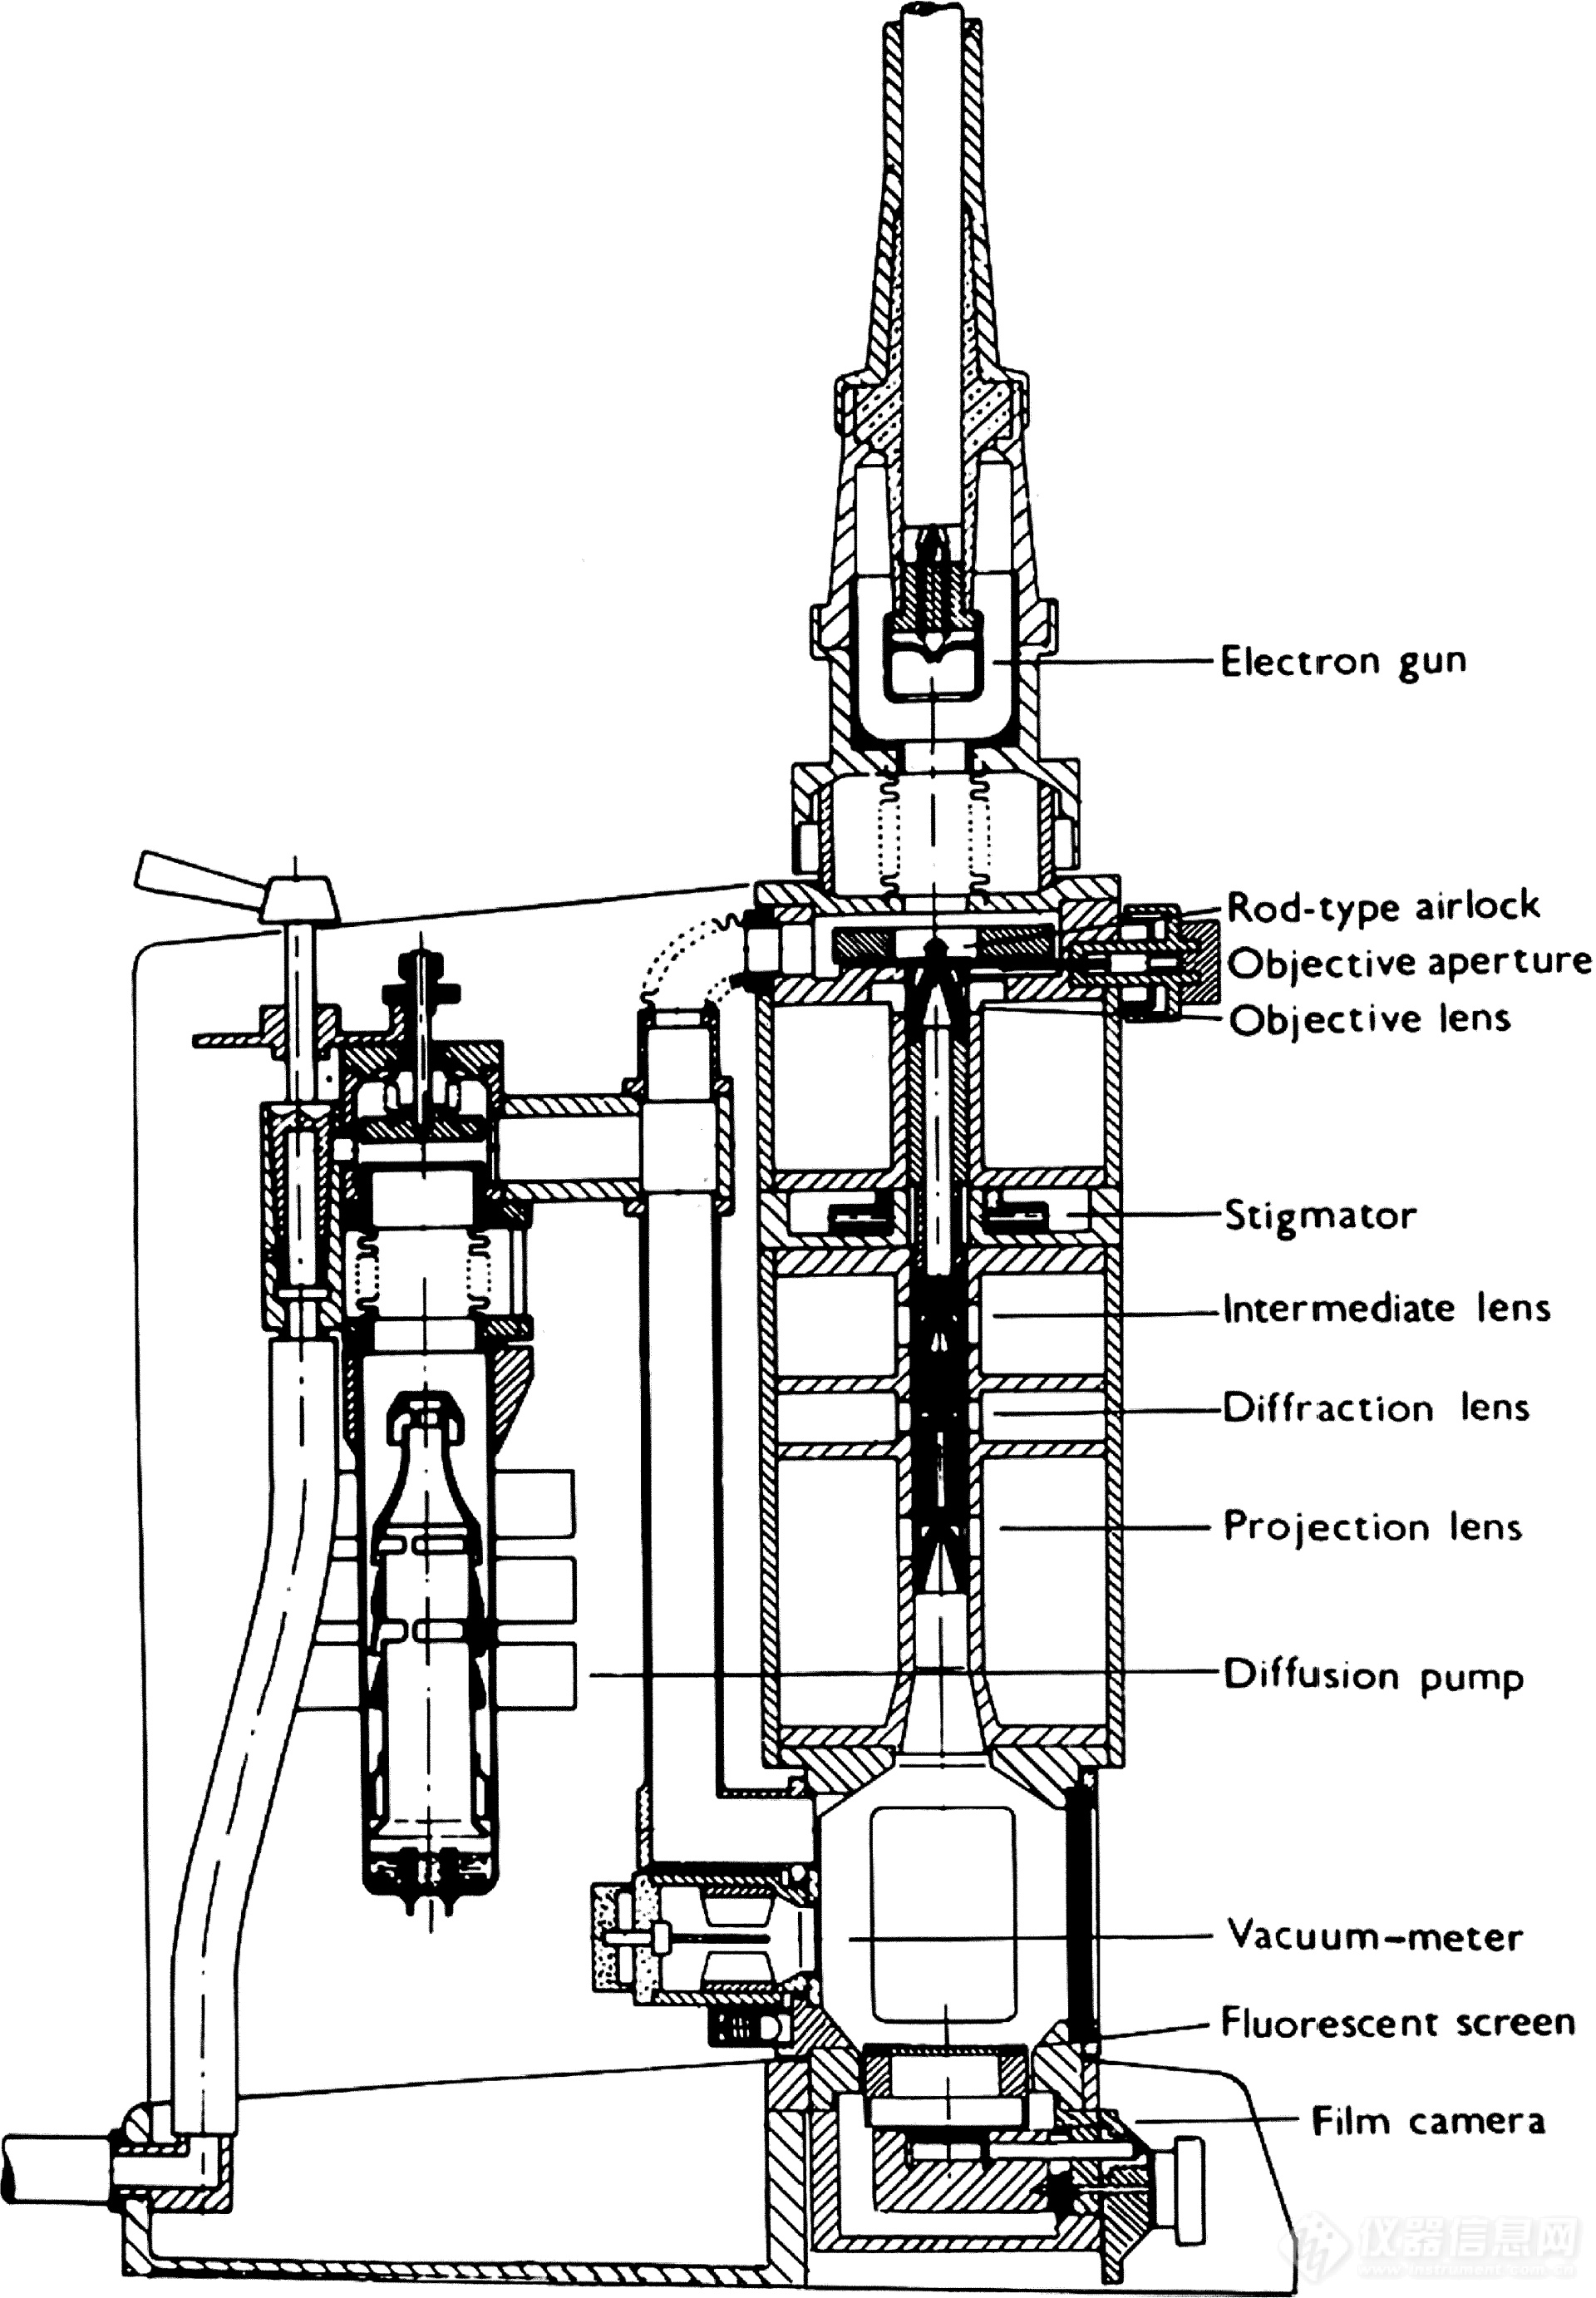 世界电镜九十年之捷克斯洛伐克早期电子显微镜发展史